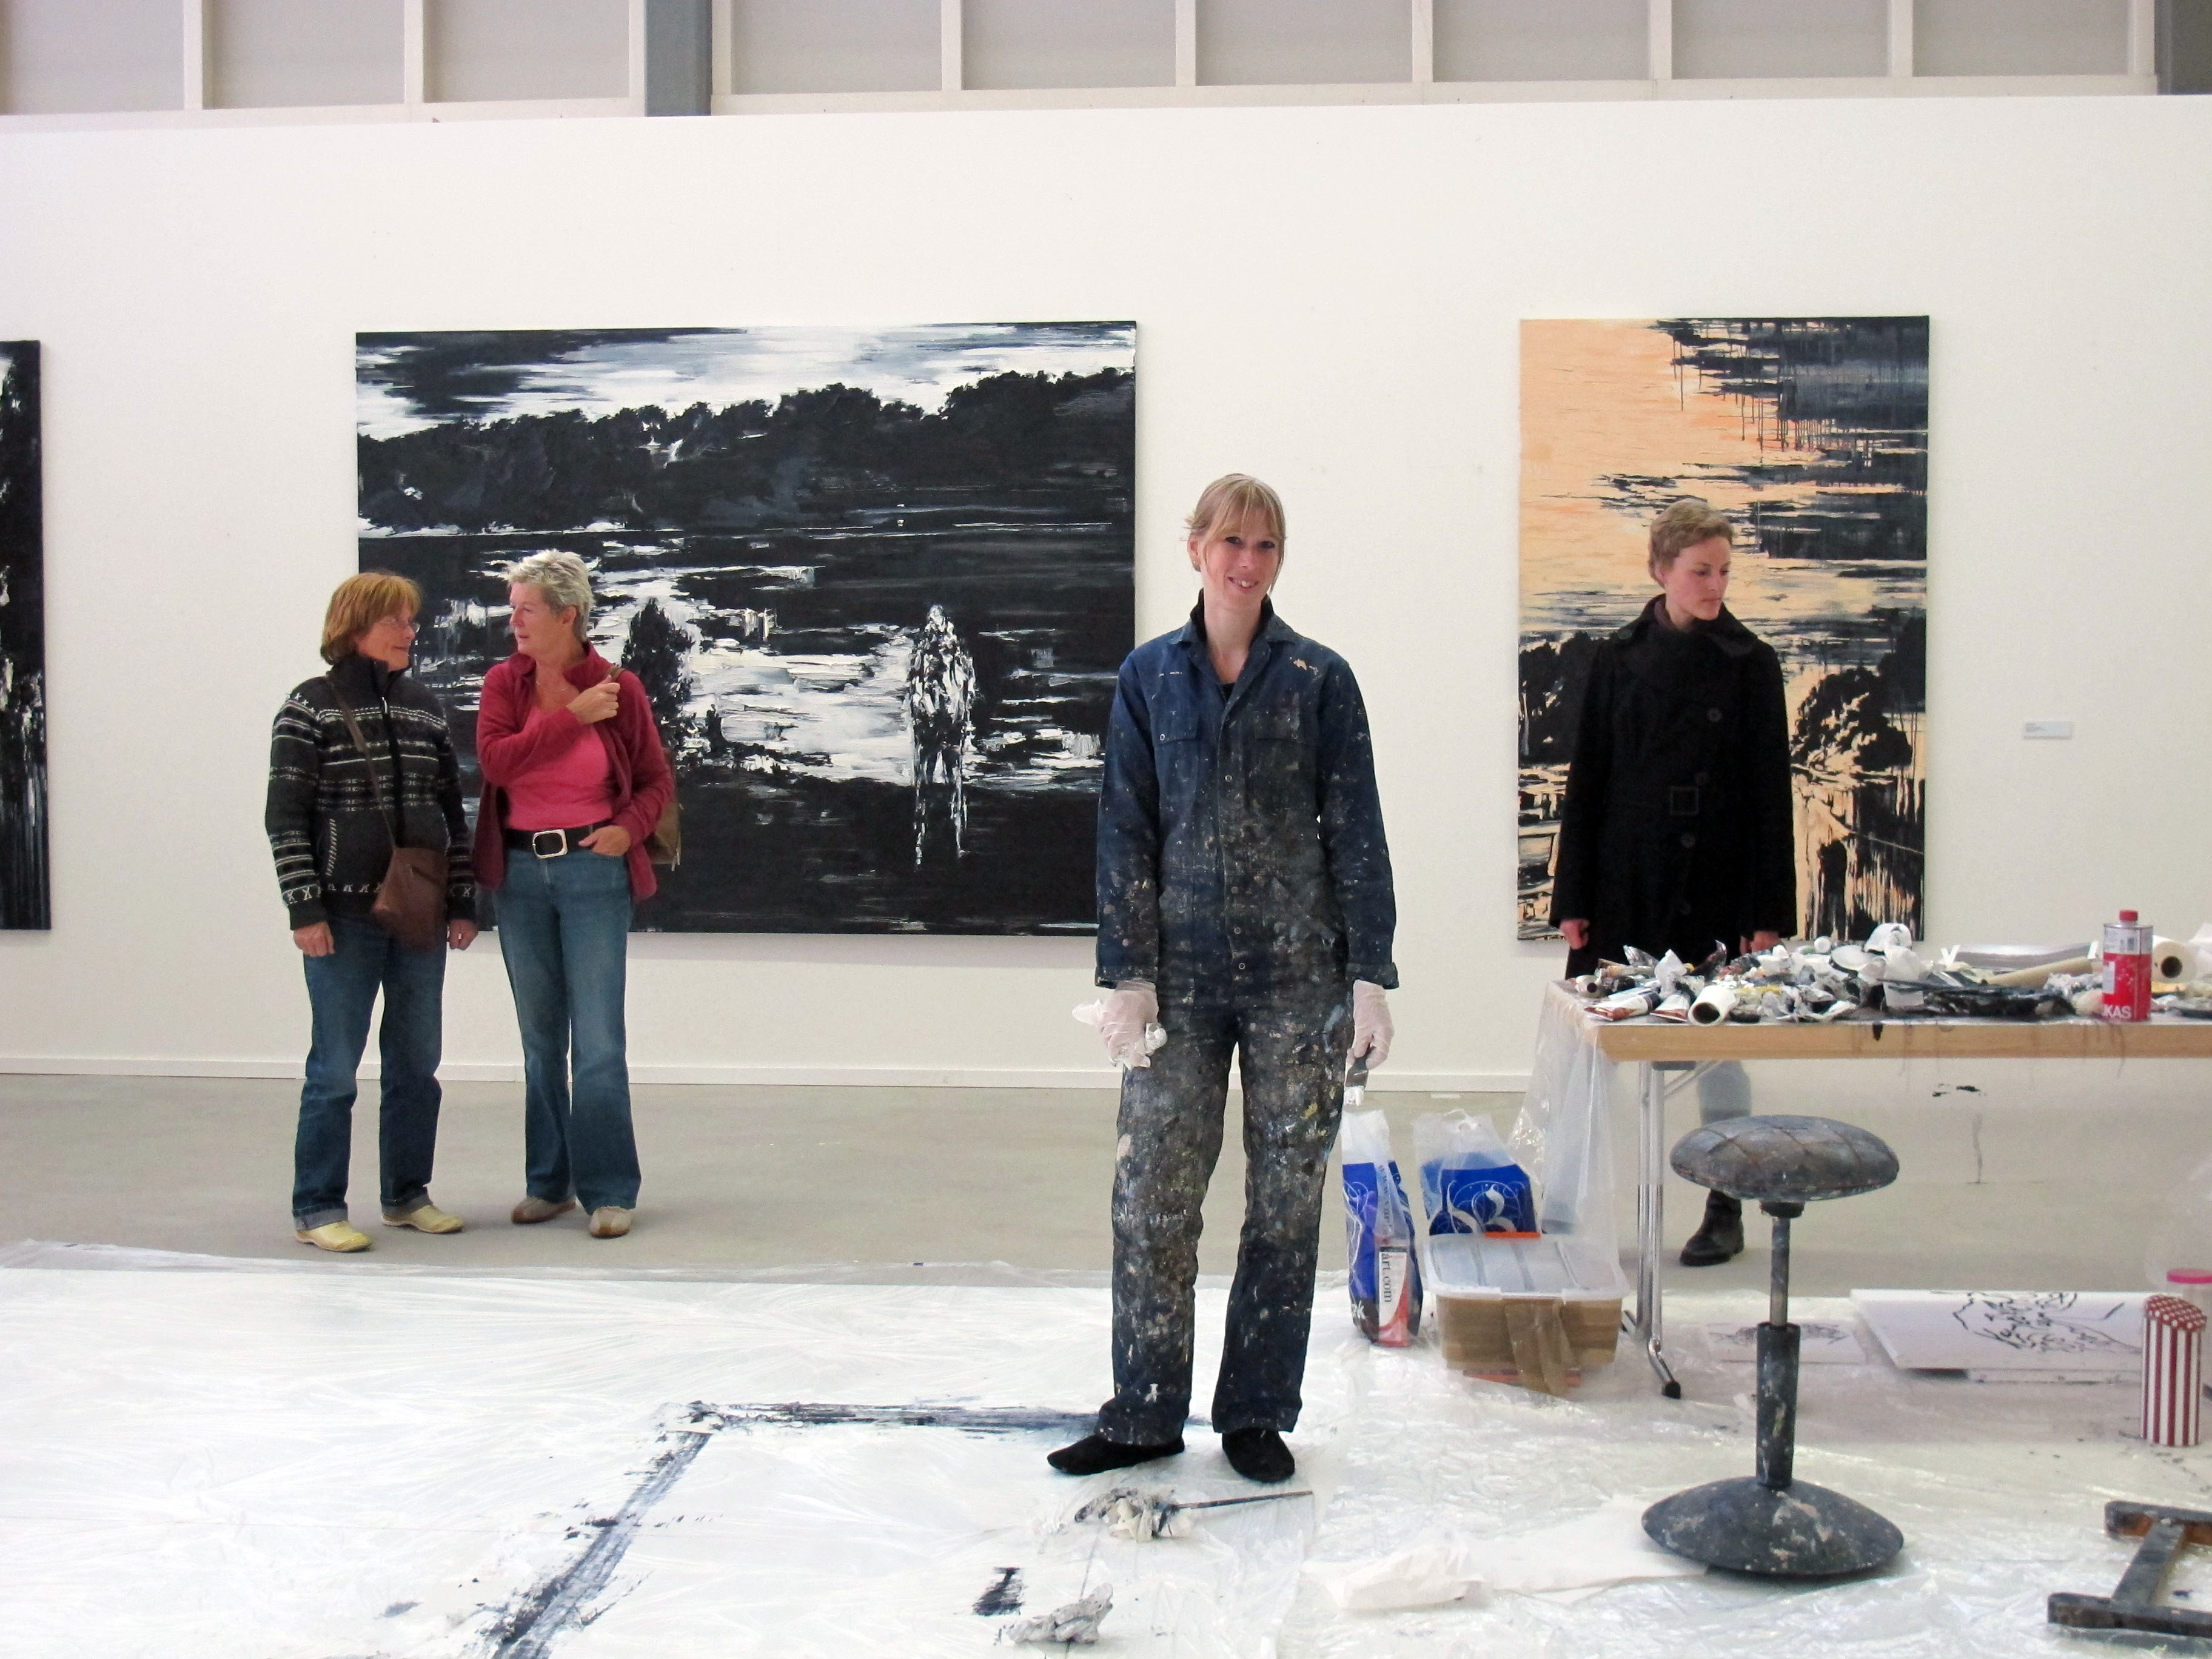 "LIVE Ateliers", Museum van Bommel van Dam, Venlo (2011)